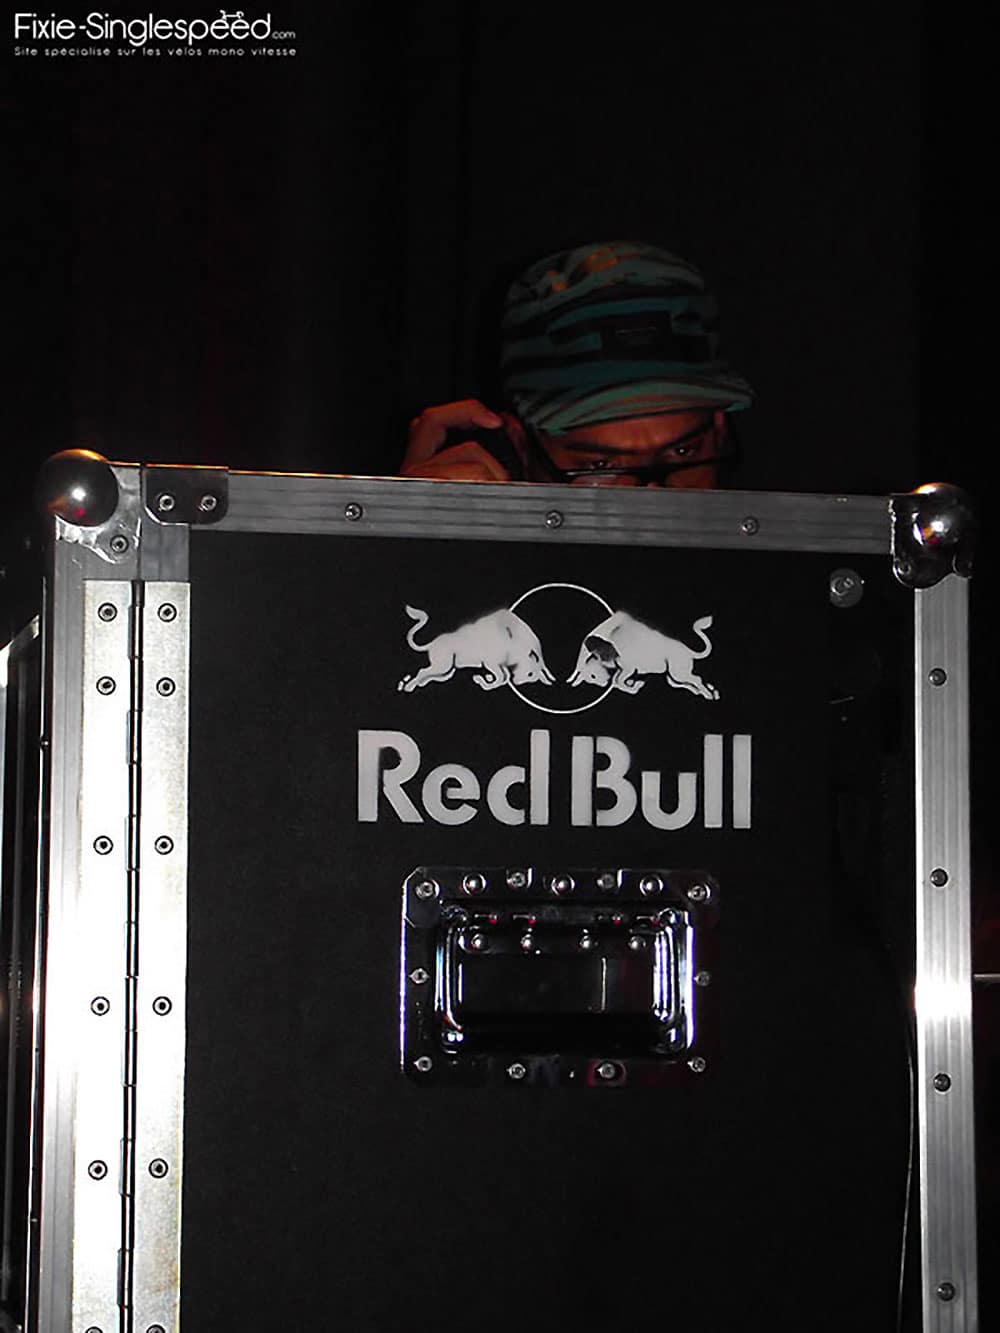 Les premières images du Red Bull Mini Drome de Paris ( Part1 )